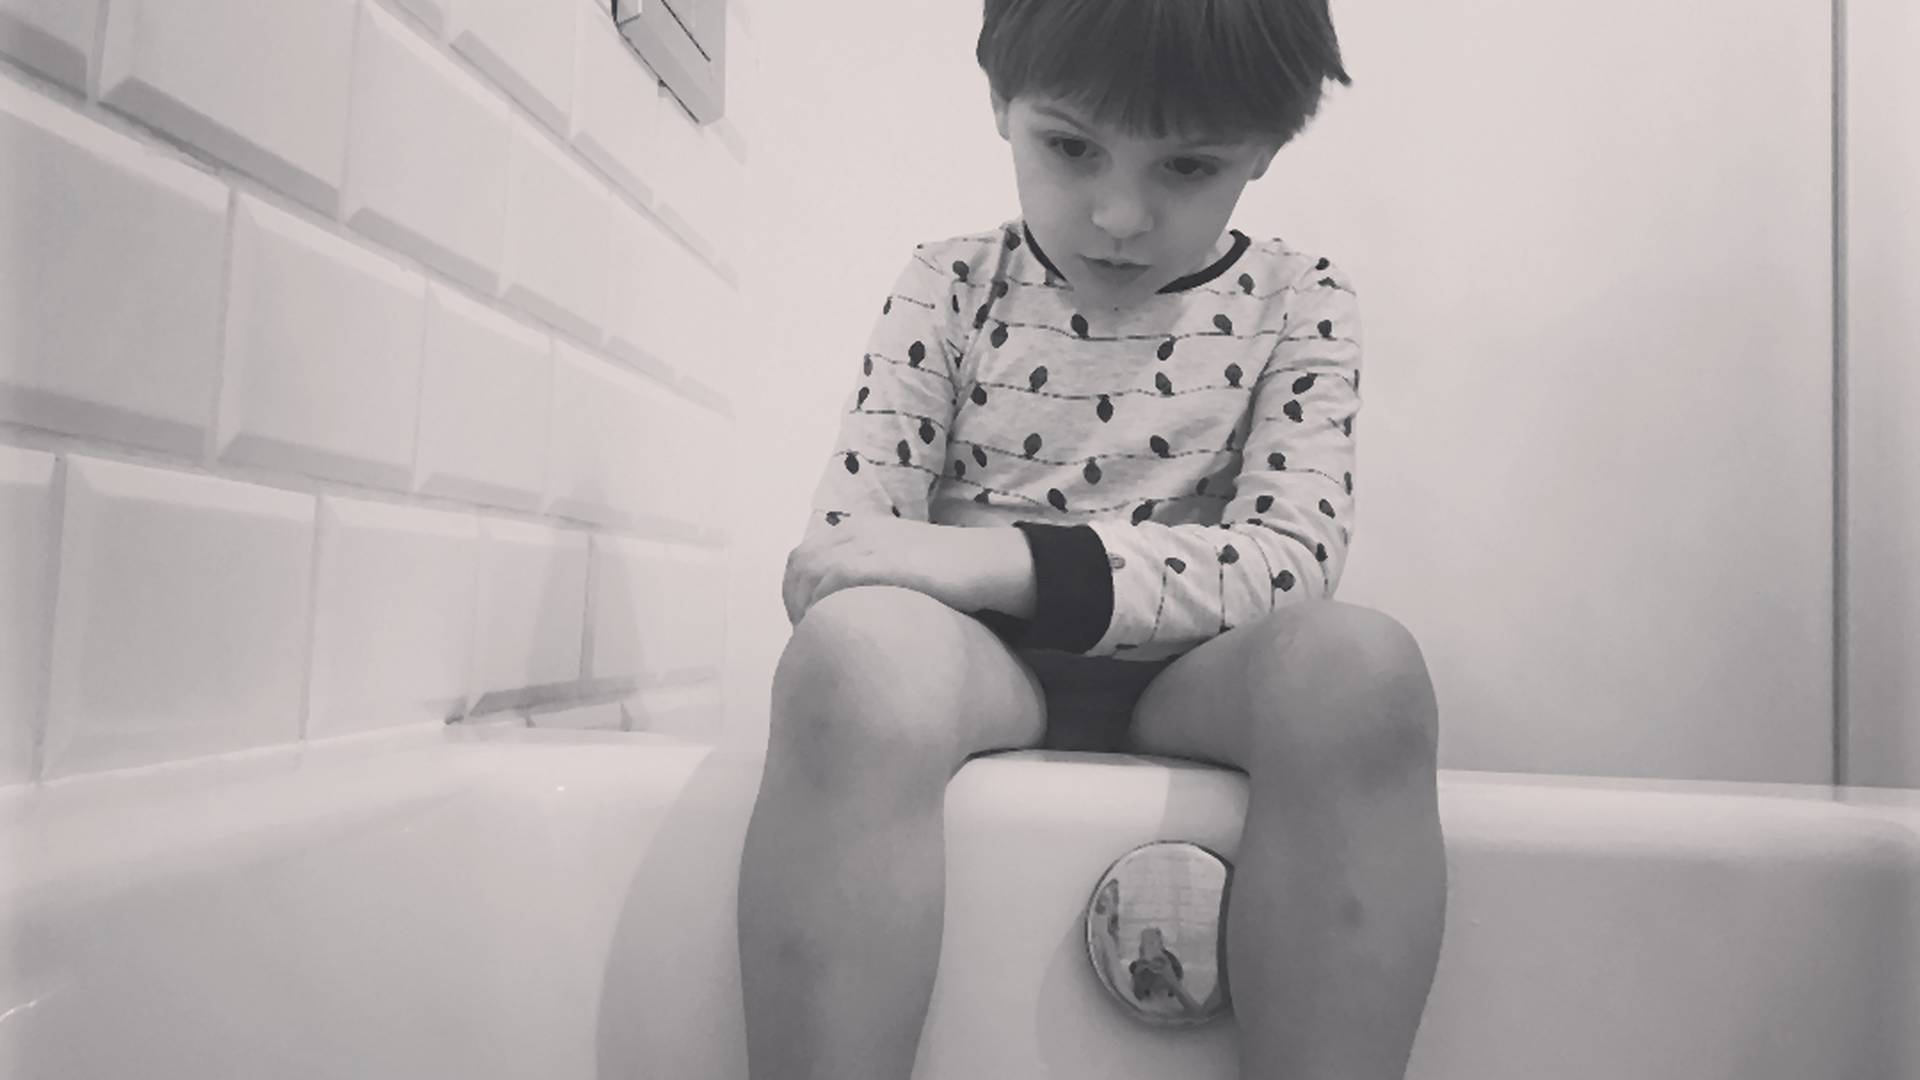 Kołakowska pokazuje zdjęcie syna, który obserwuje ją w kąpieli. Zbyt intymne?